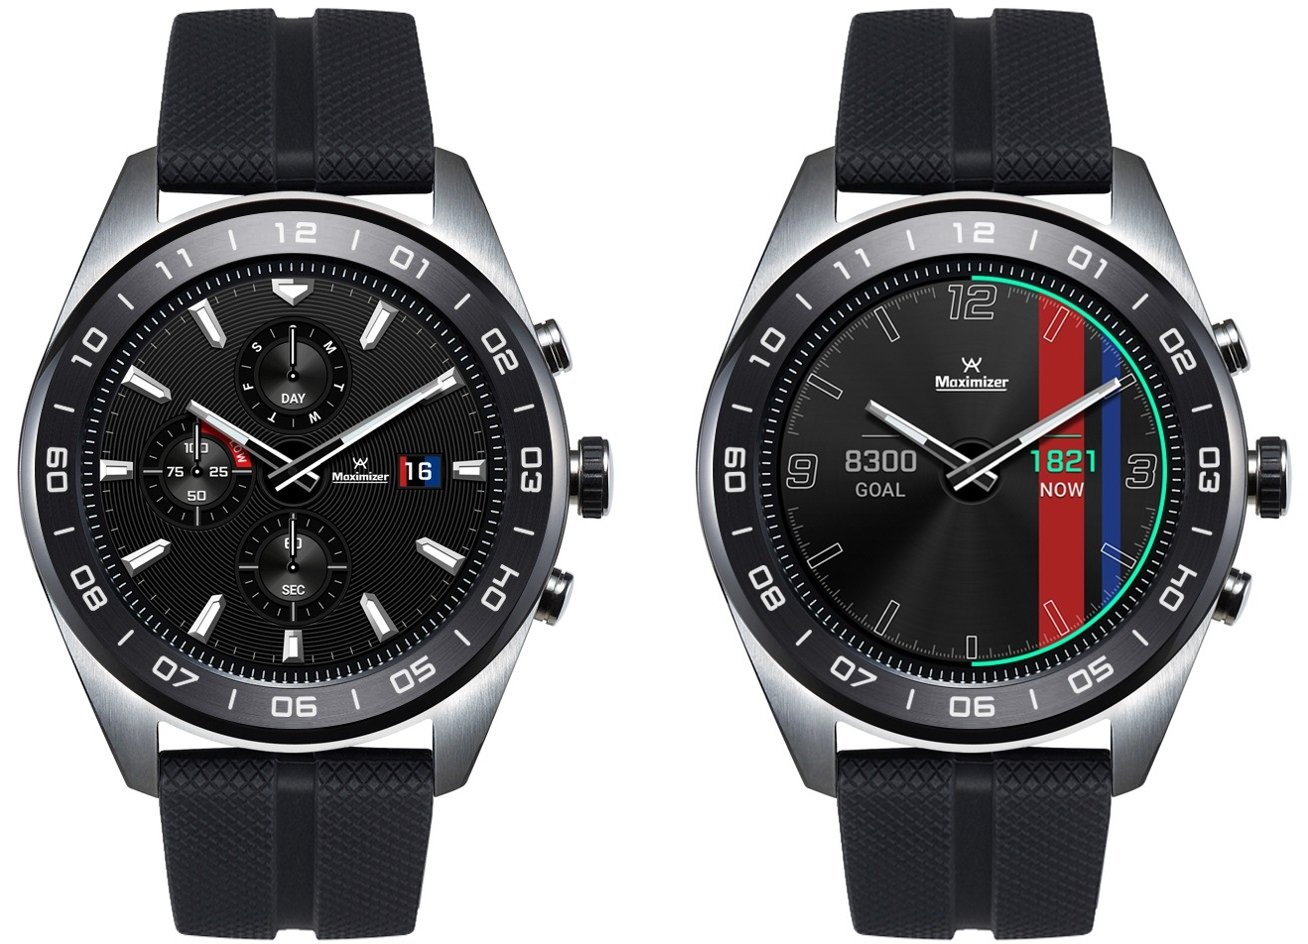 Το νέο LG Watch W7 συνδυάζει τα χαρακτηριστικά του Wear OS με εκείνα ενός κλασικού χρονογράφου